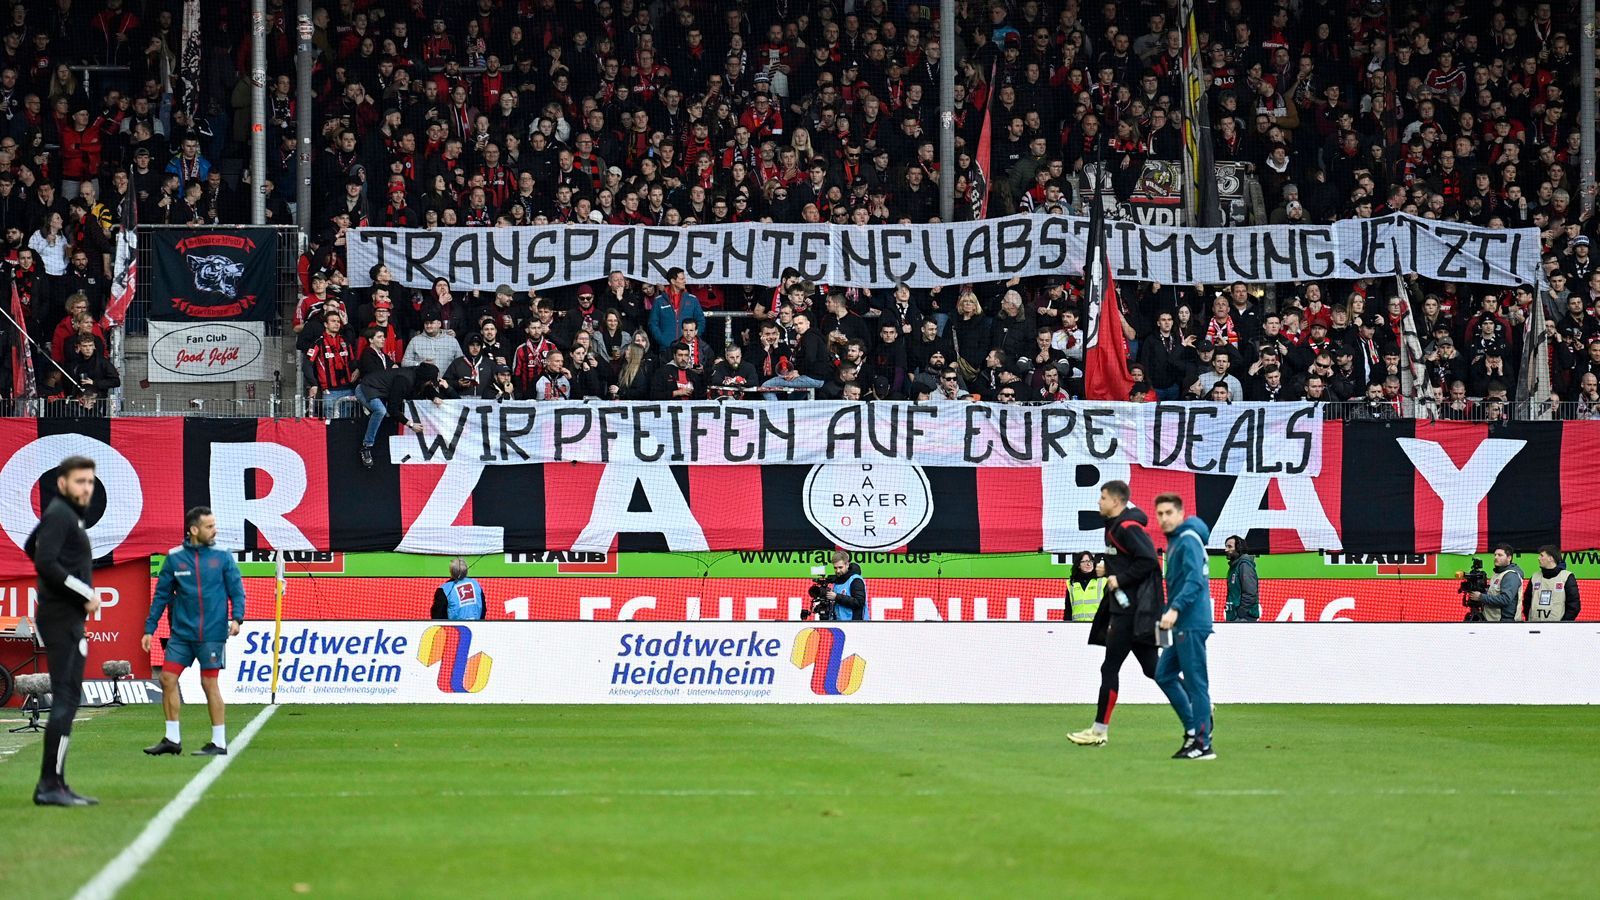 <strong>Bayer-Fans fordern neue Abstimmung</strong><br>Wie viele andere Fan-Gruppierungen auch, forderte der Anhang von Bayer Leverkusen beim Auswärtsspiel in Heidenheim via Transparent eine neue und vor allem transparente Abstimmung über einen möglichen Einstieg eines DFL-Investors.